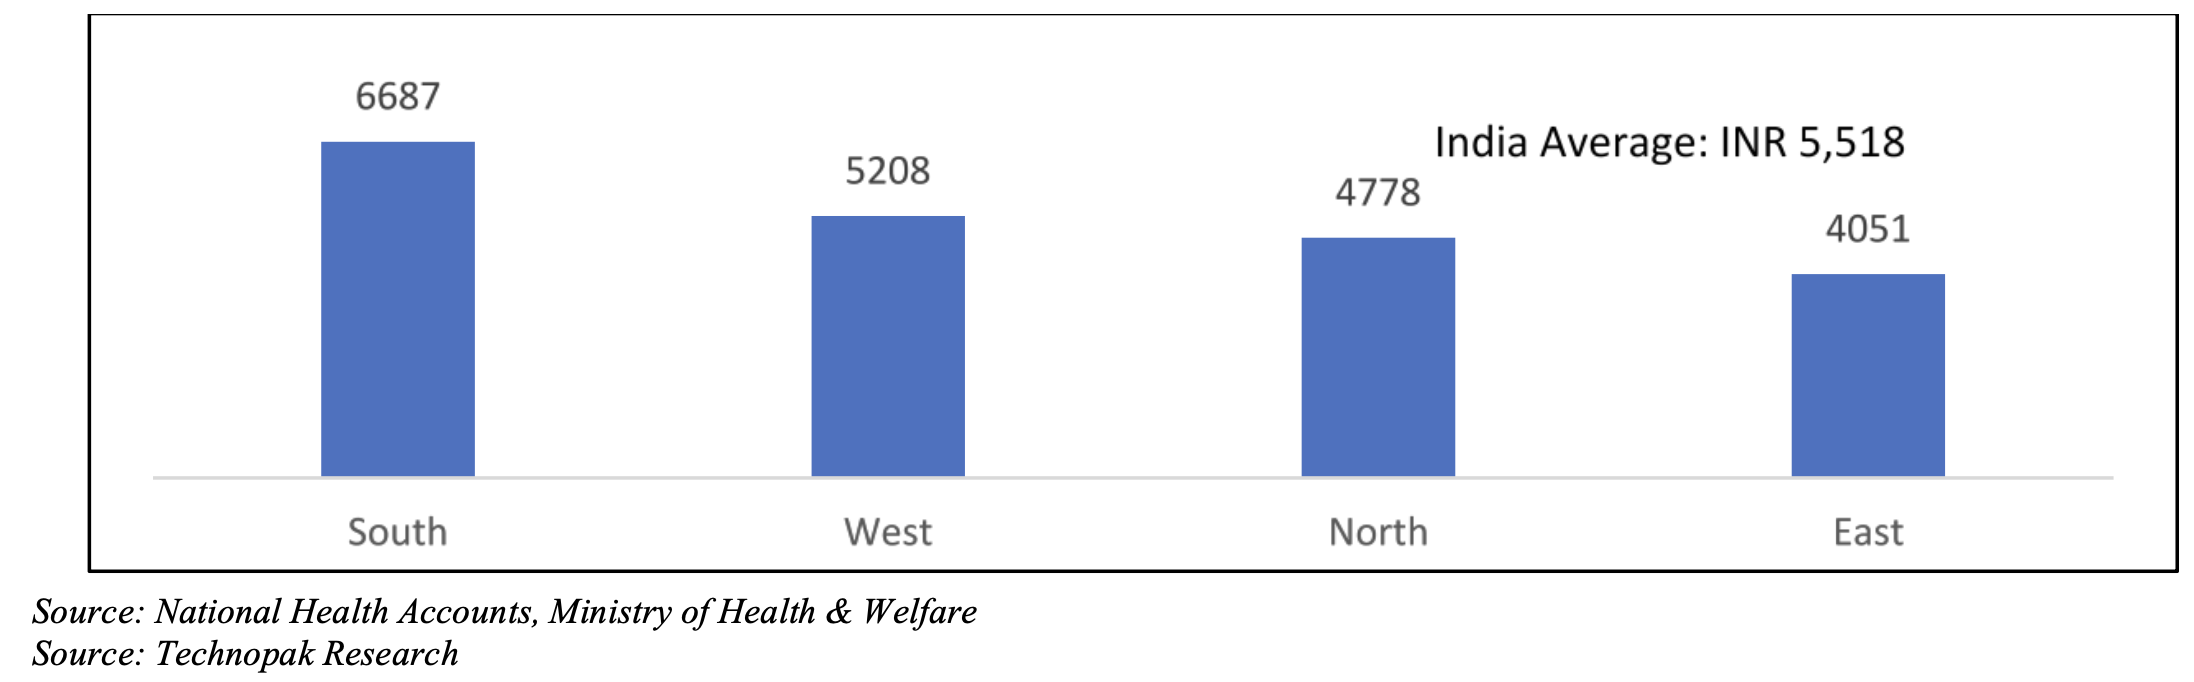 regional-estimated-per-capita-per-annum-health-expenditure